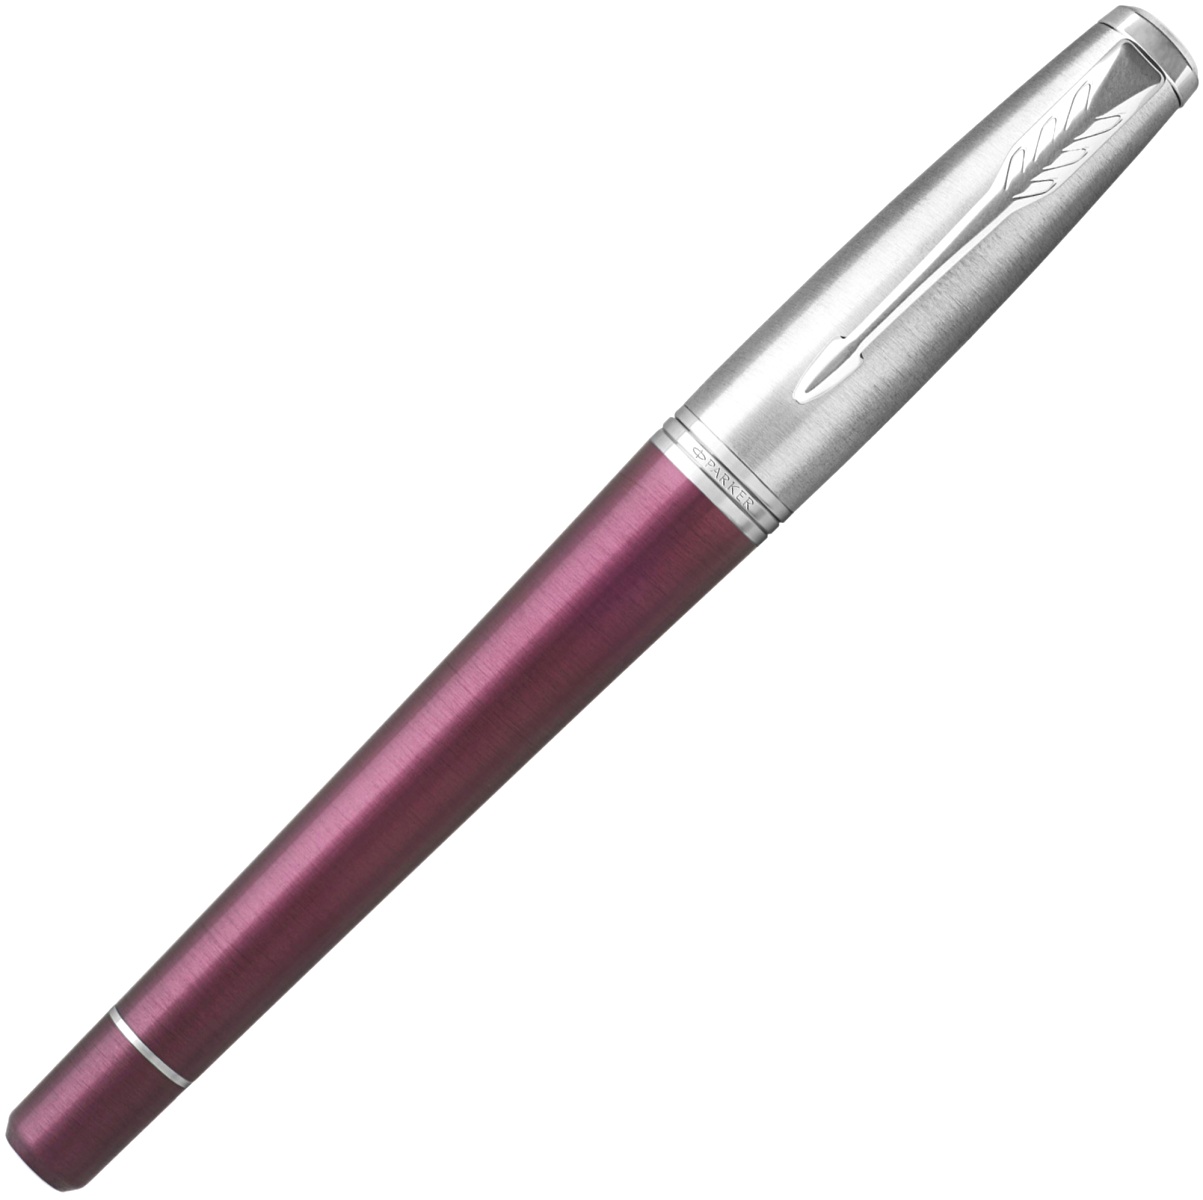  Ручка перьевая Parker Urban Premium F310, Dark Purple CT (Перо F), фото 2